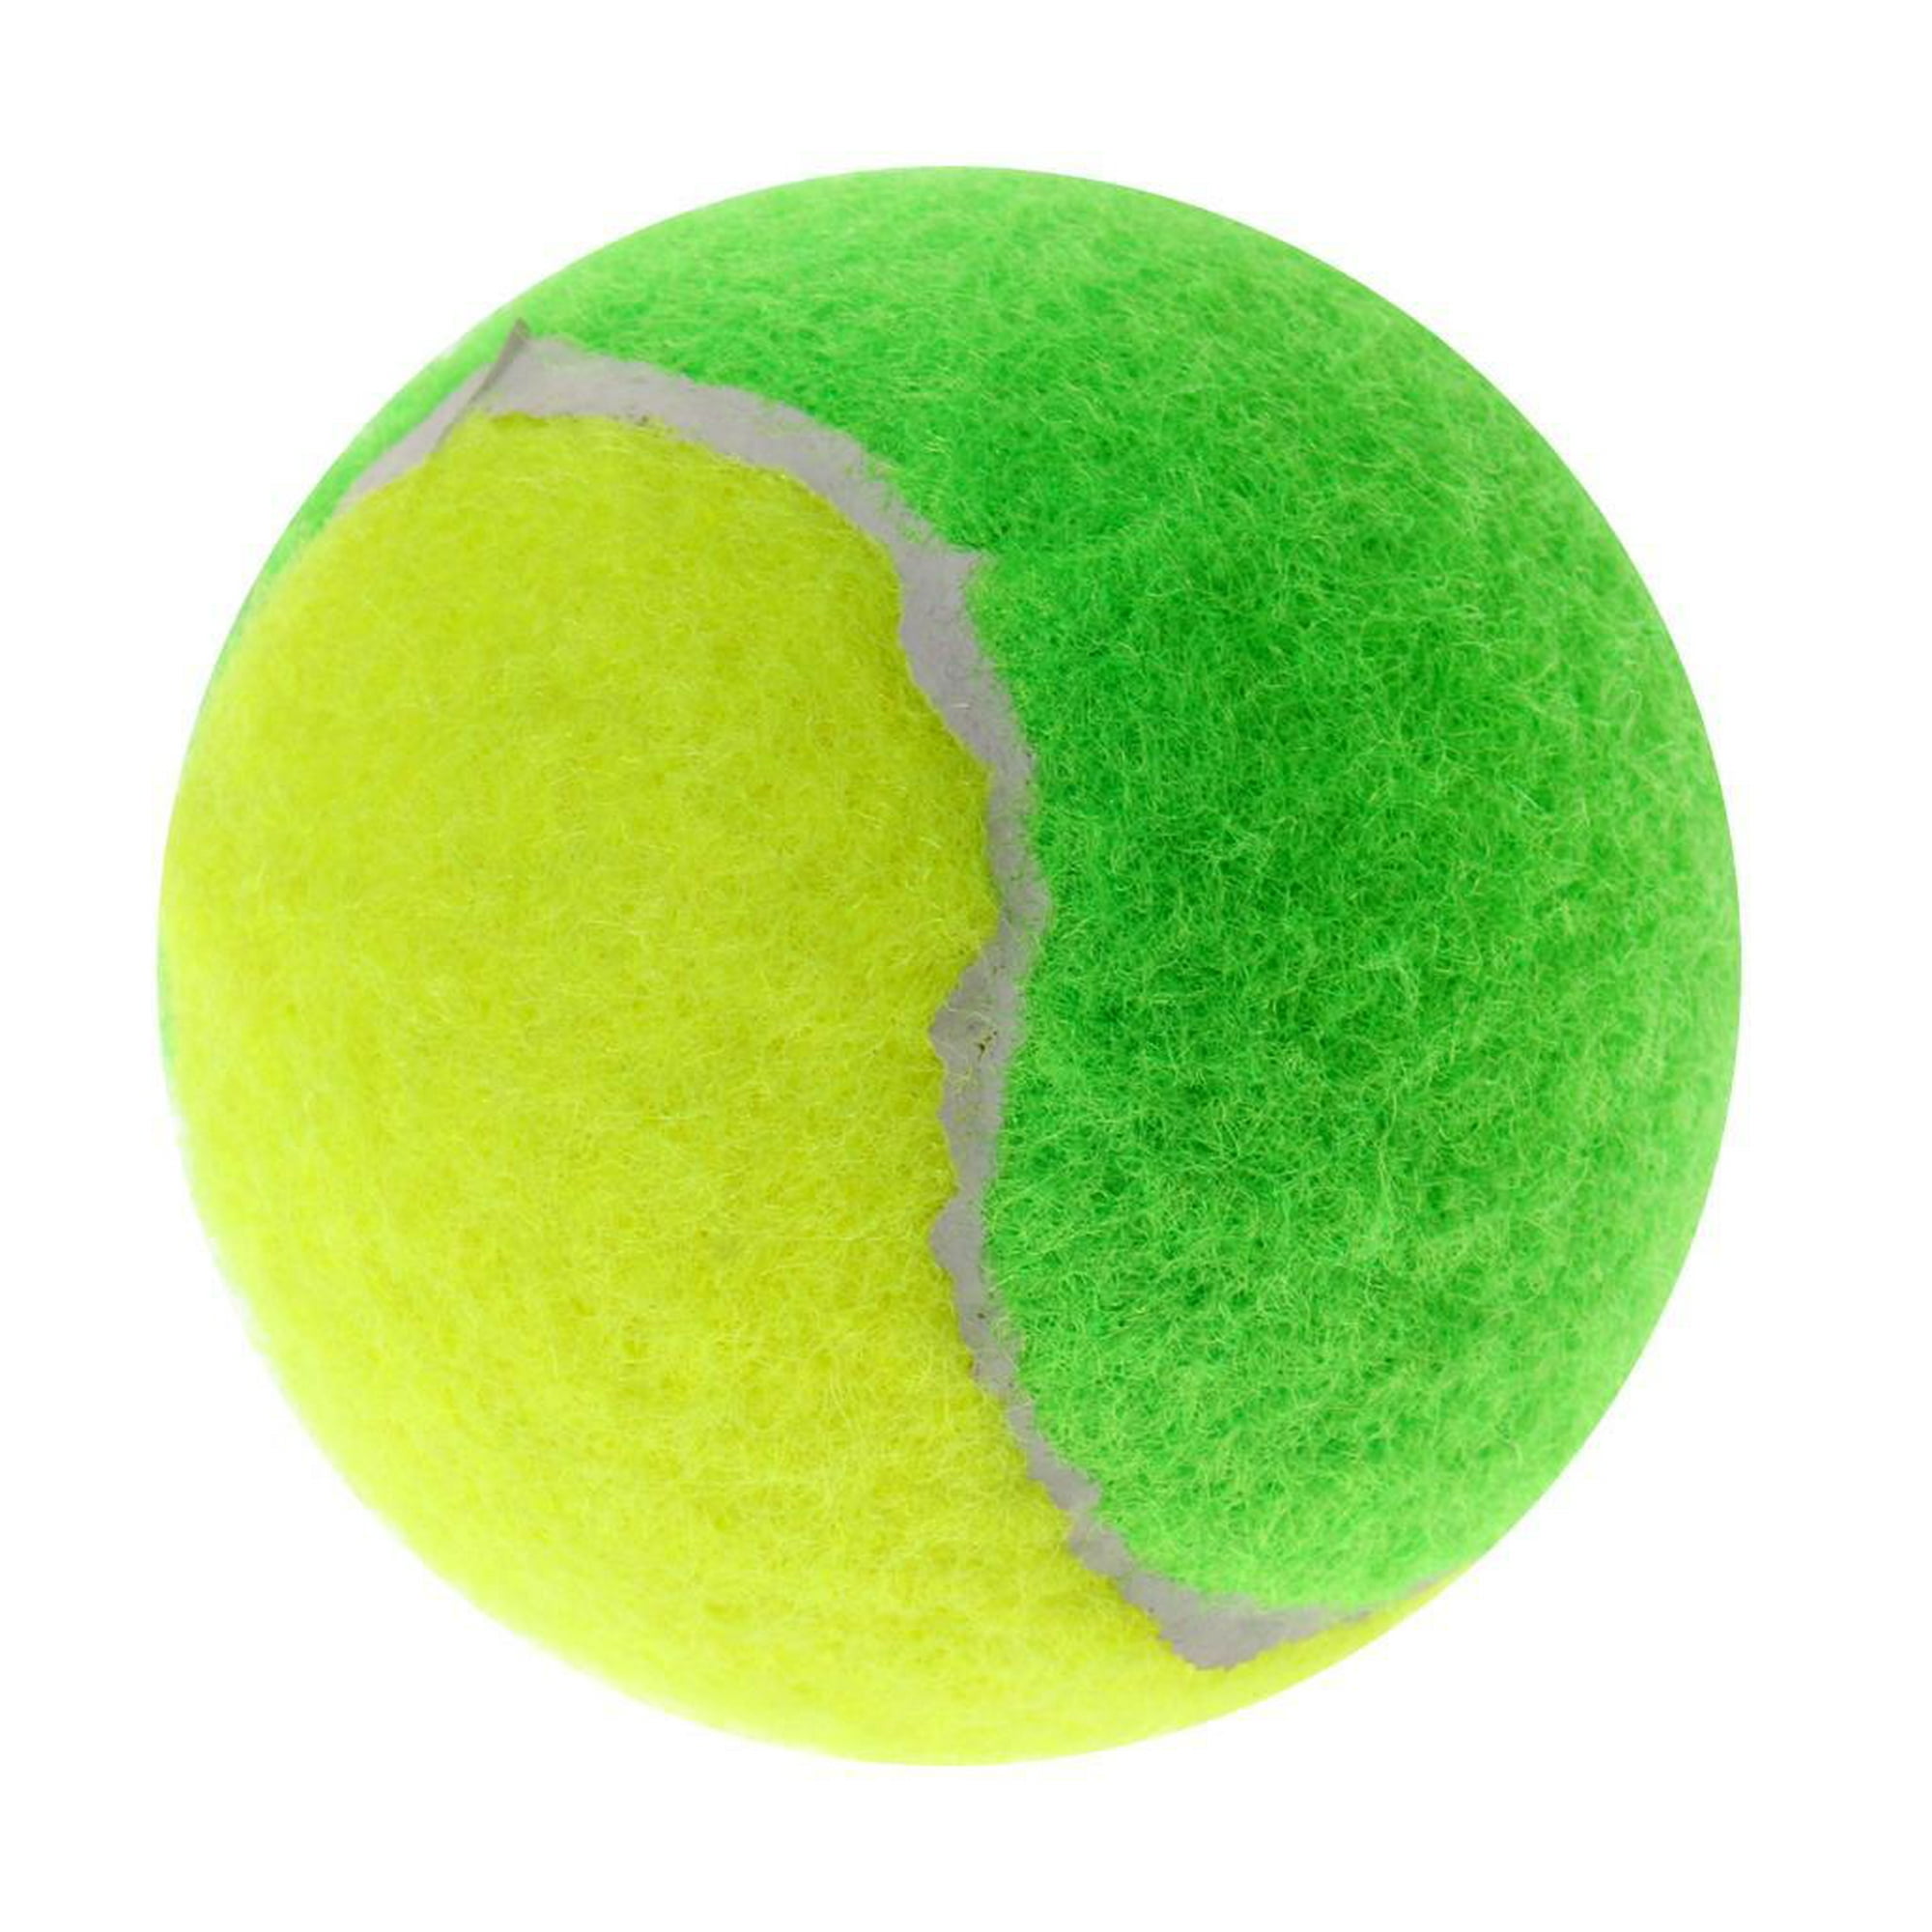  Pelotas de tenis de práctica, pelotas de pádel, pelotas de  tenis para perros y todos, pelota de perro, pelotas de pádel/pelotas de  tenis, paquete de 3 en lata transparente para transporte 